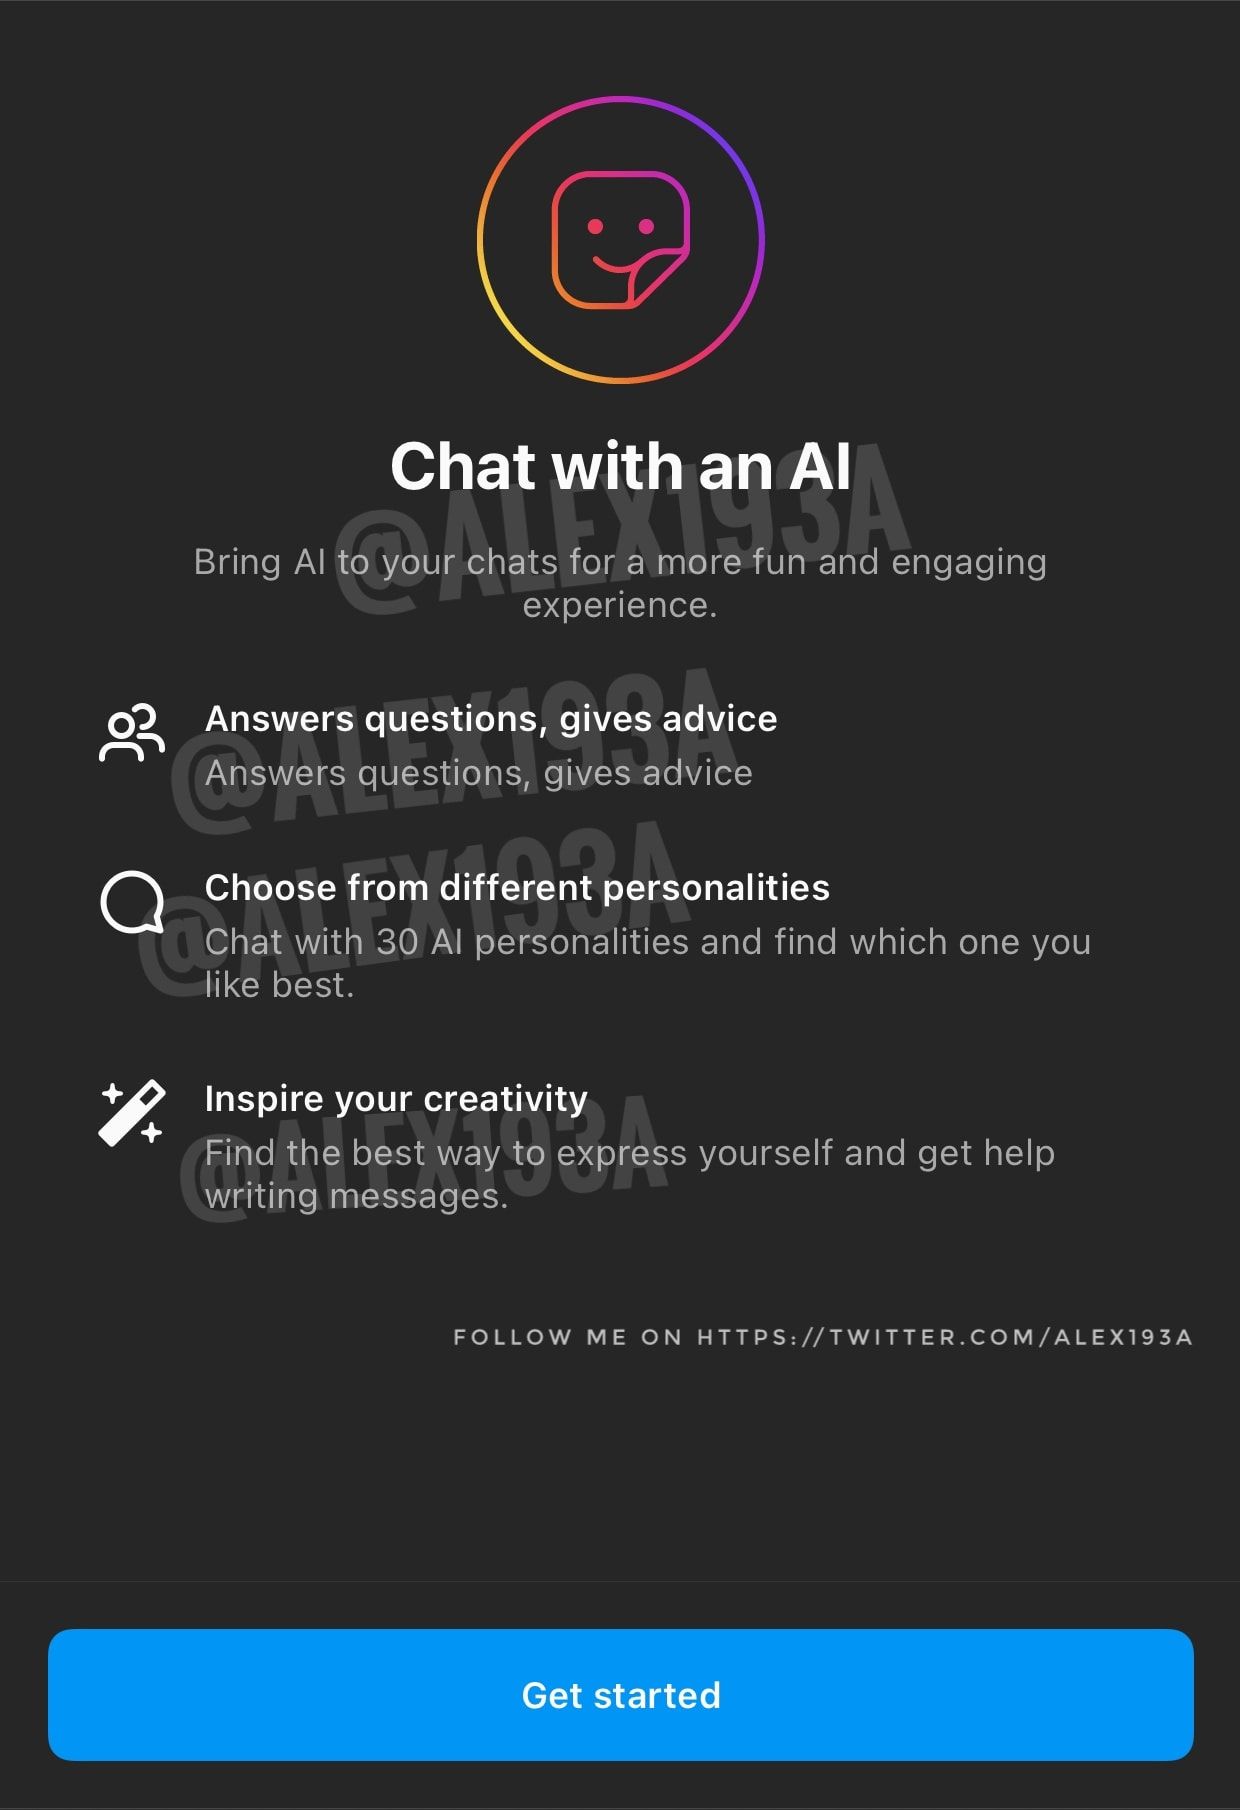 Print de uma tela de apresentação do “Chat with an AI” do Instagram.